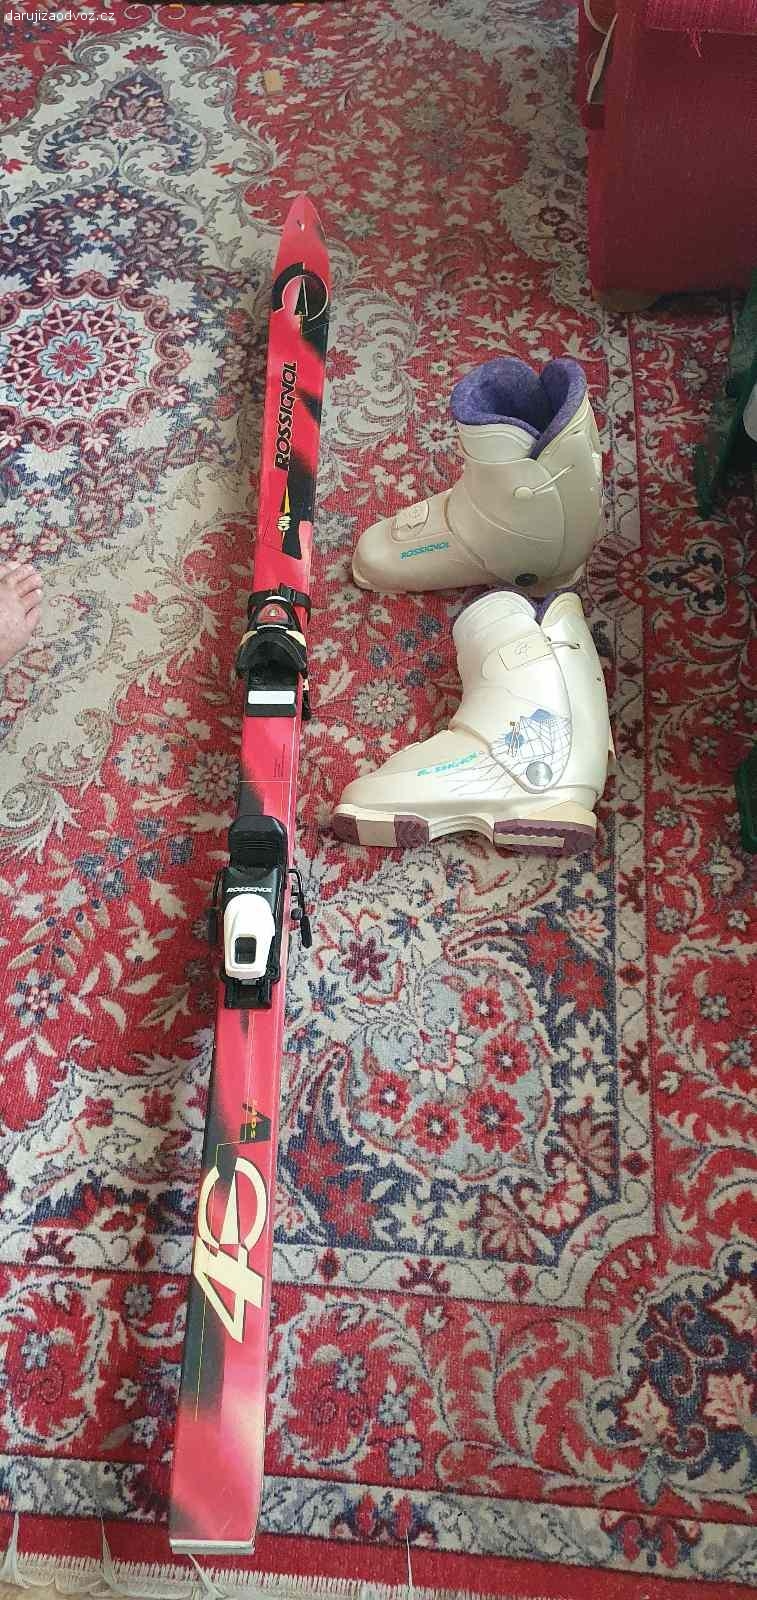 Staré lyže, zn. Rossignol. Používané, mají známky opotřebení.
Vel bot cca 38. Délka lyží cca 165cm.